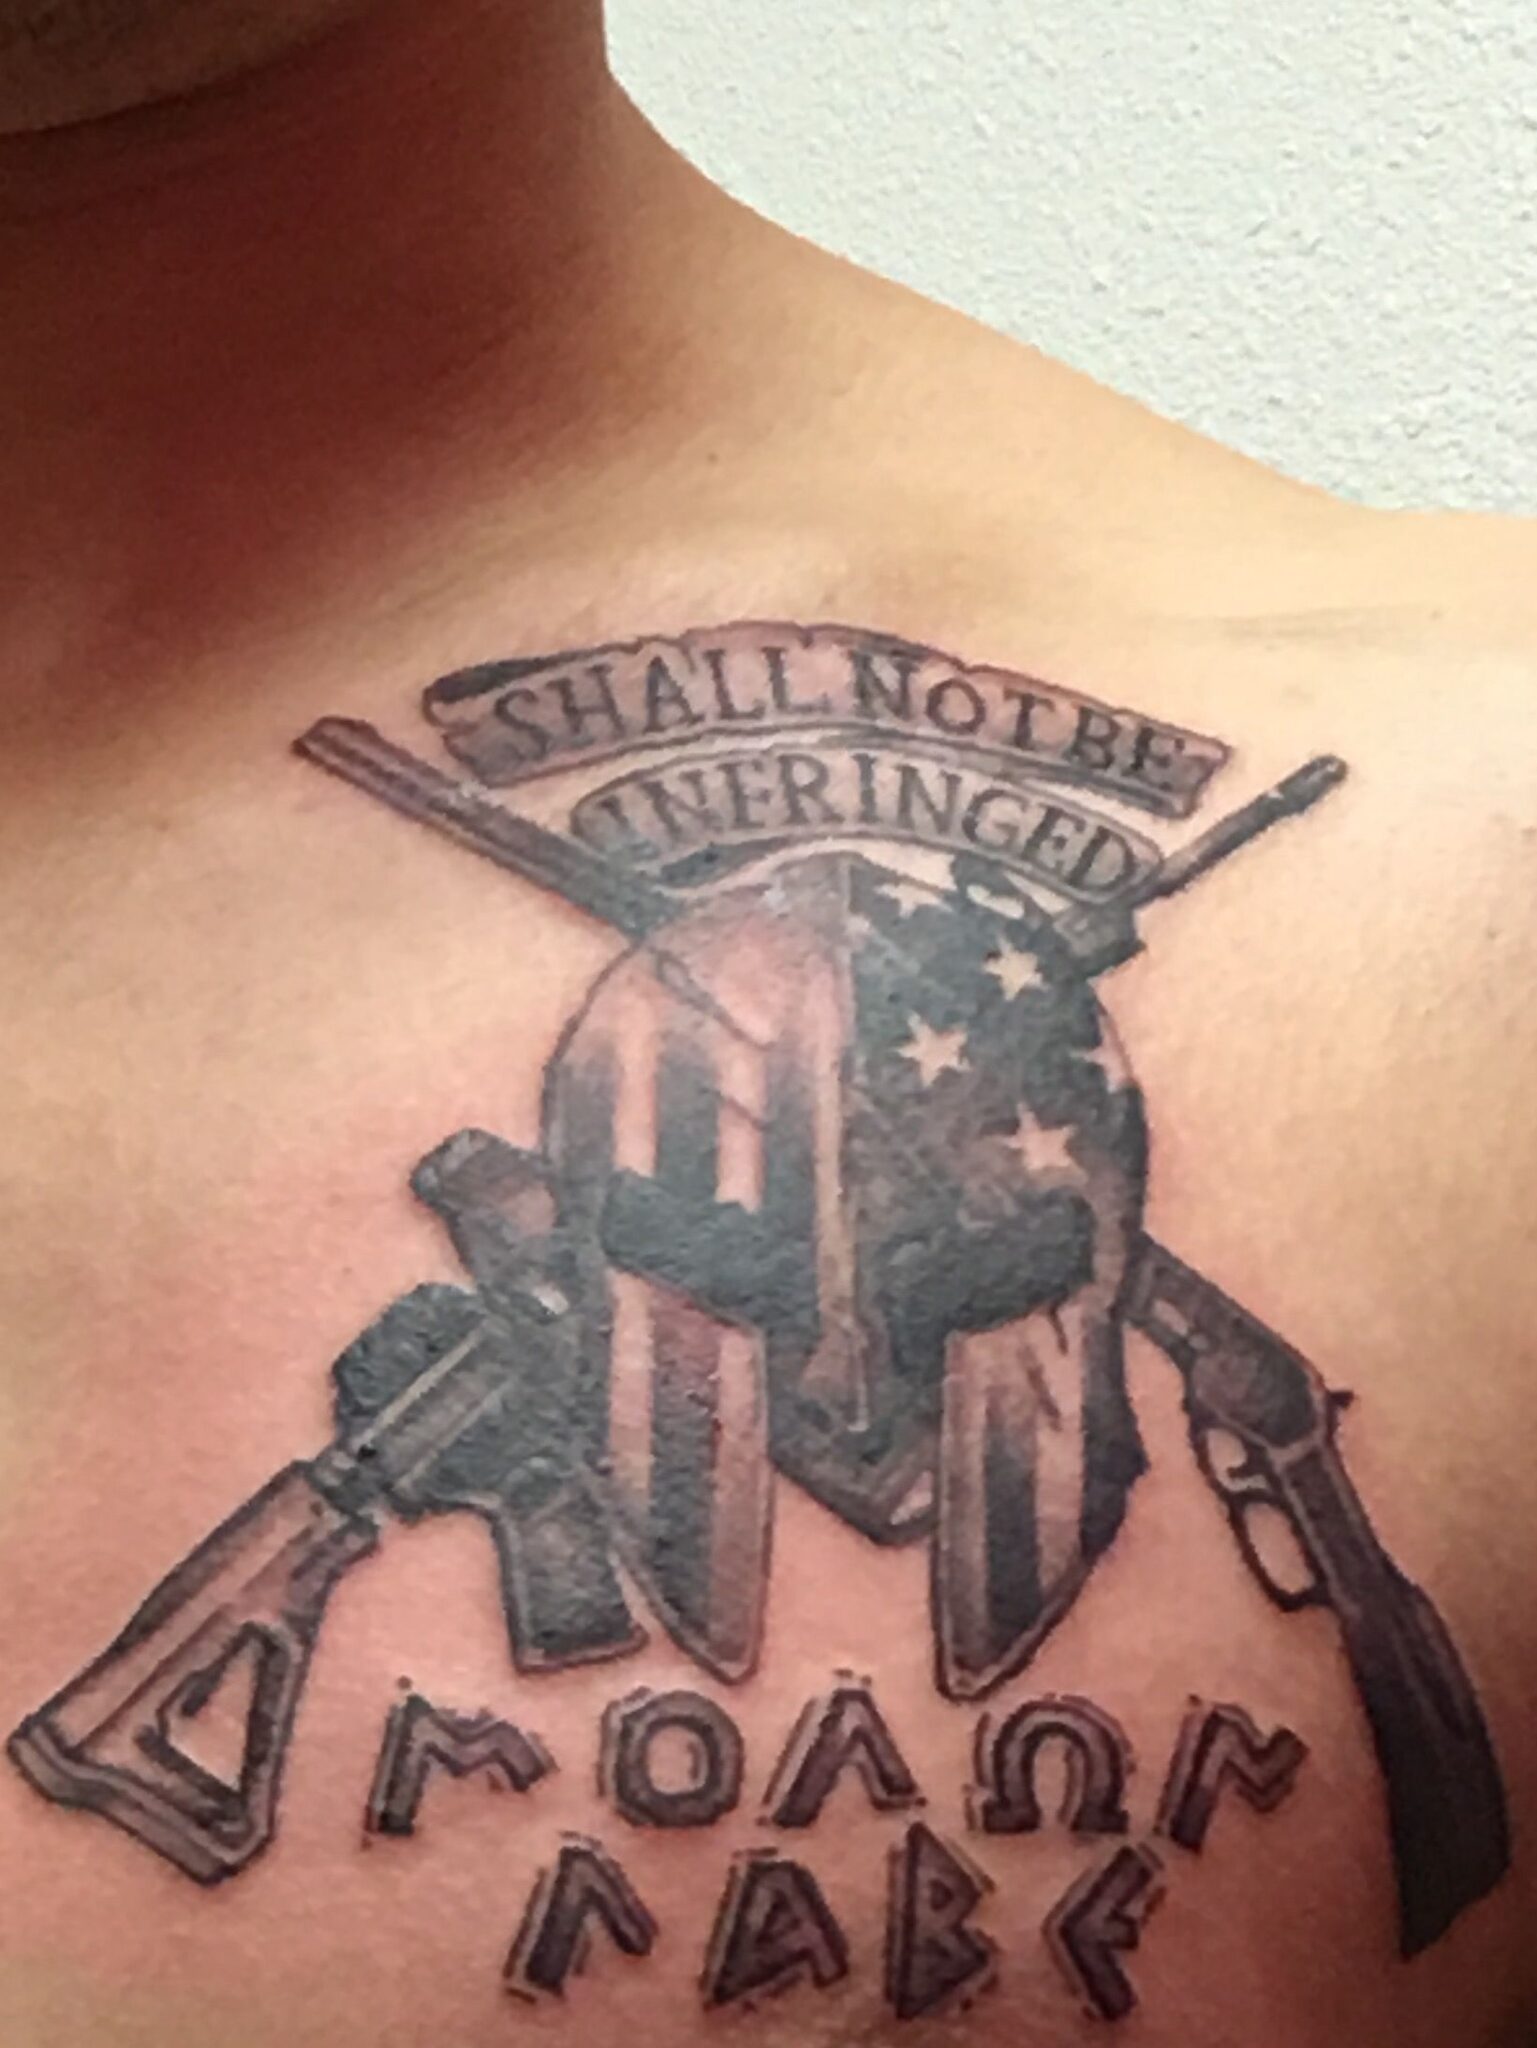 Eagle and flag Molon labe tattoo.